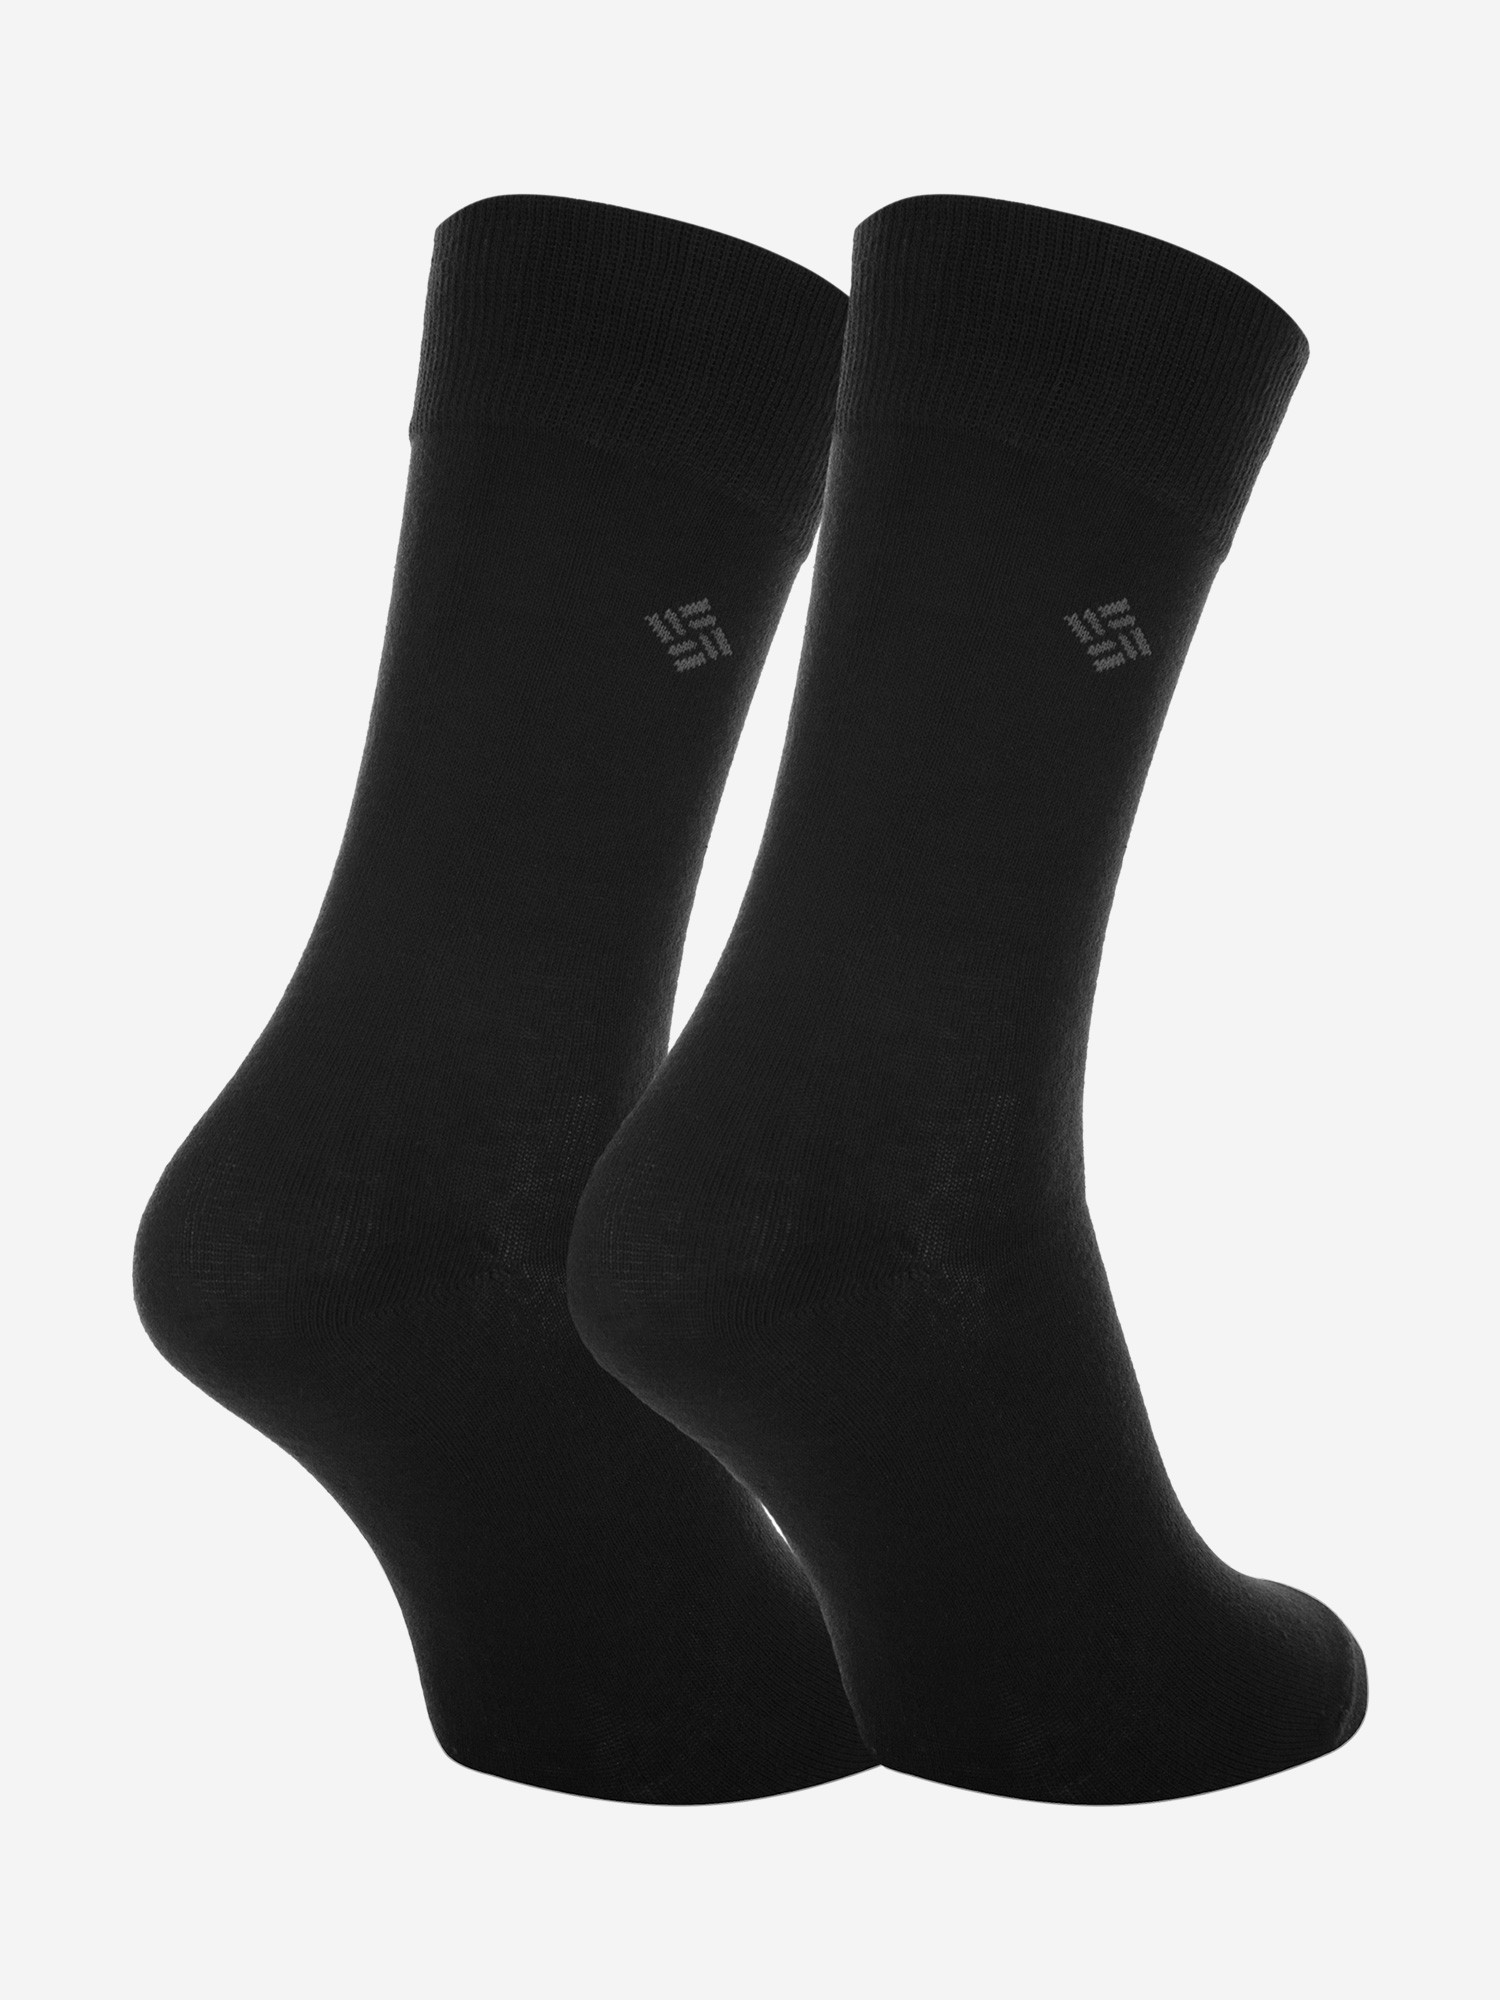 Шкарпетки чоловічі Columbia, 2 пари